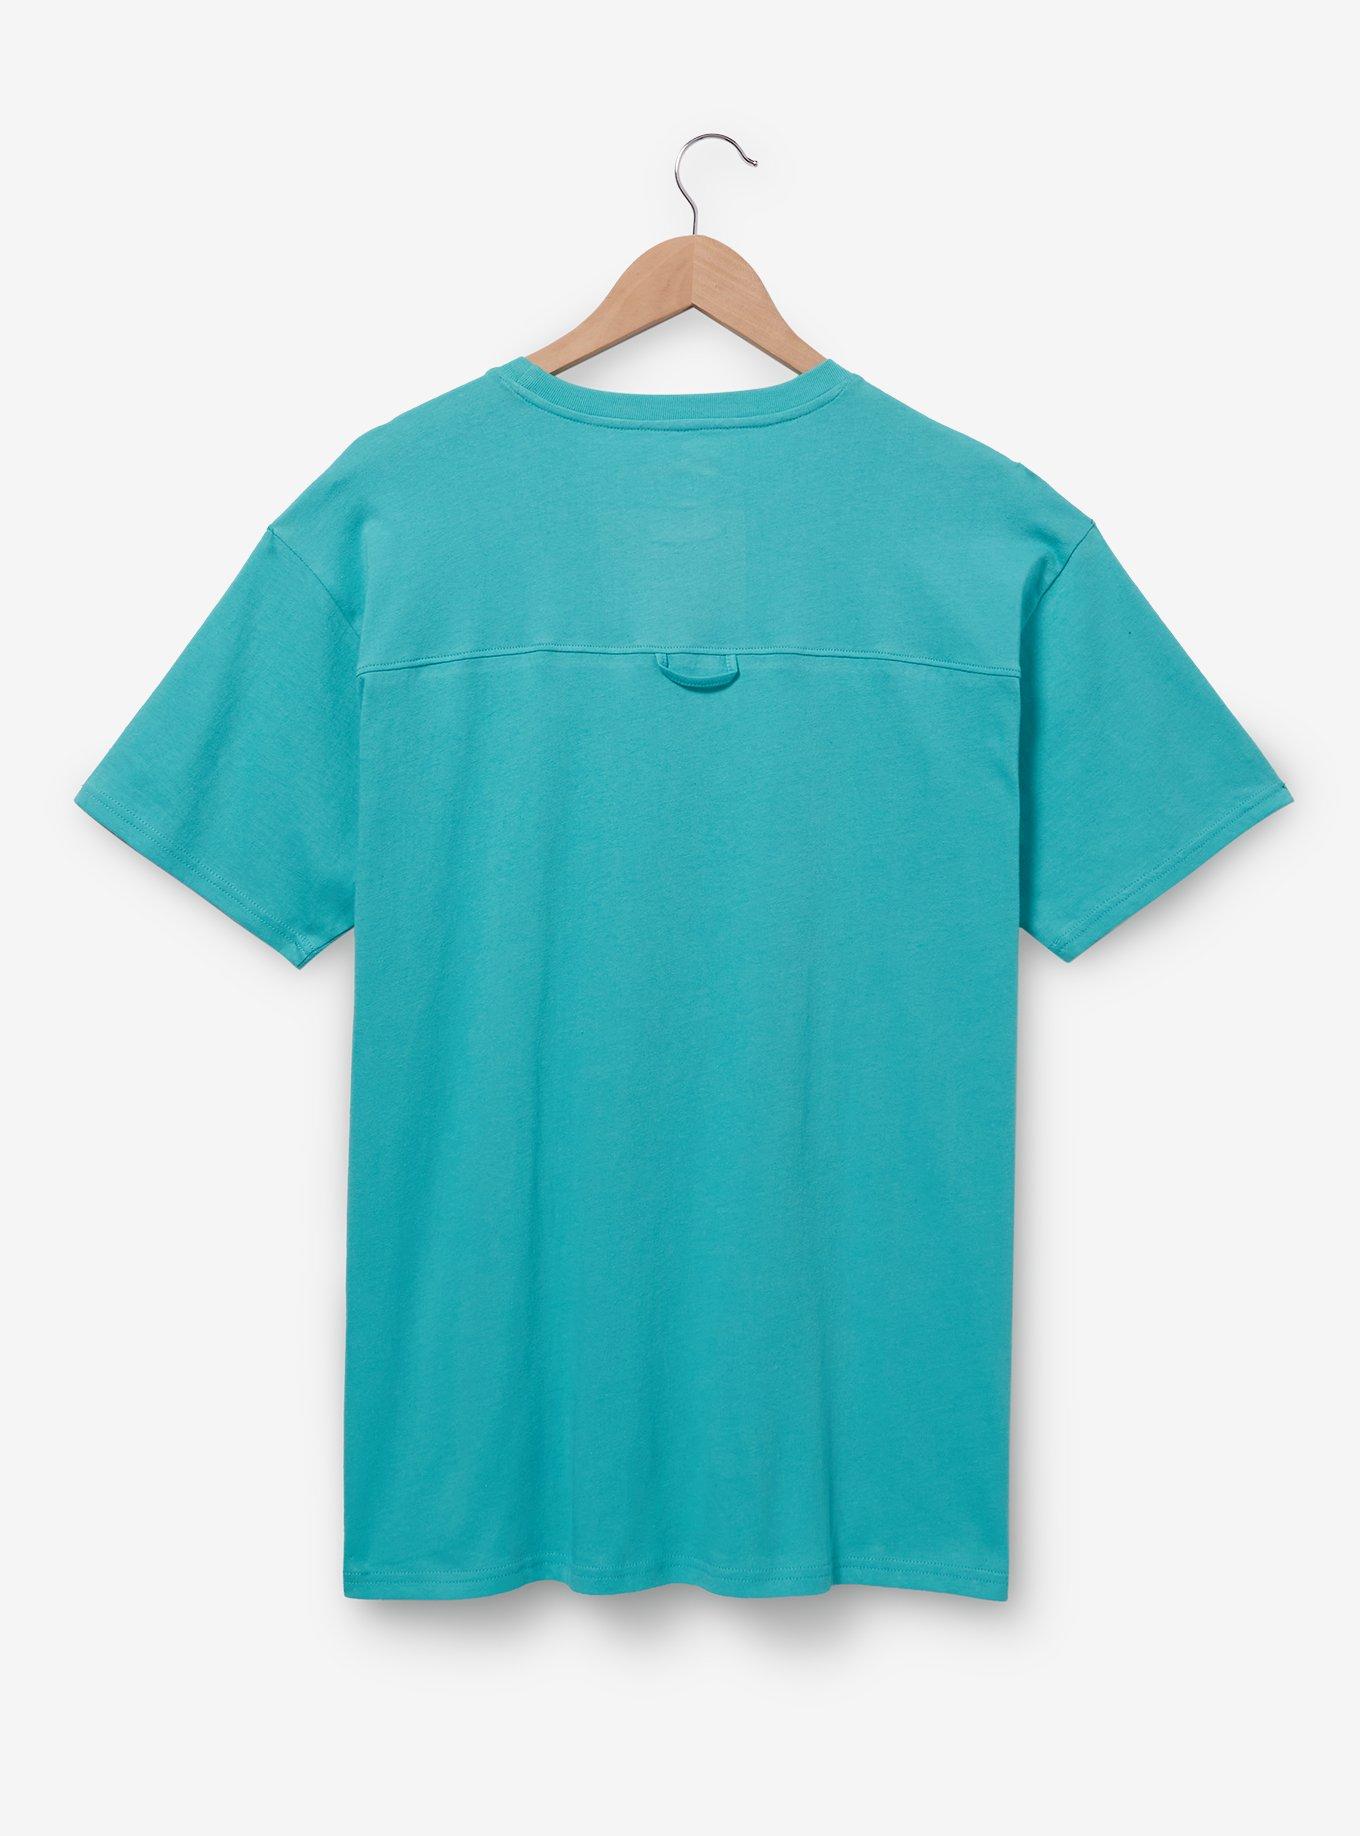 Disney Lilo & Stitch Floral Portrait T-Shirt - BoxLunch Exclusive, CADET BLUES, alternate